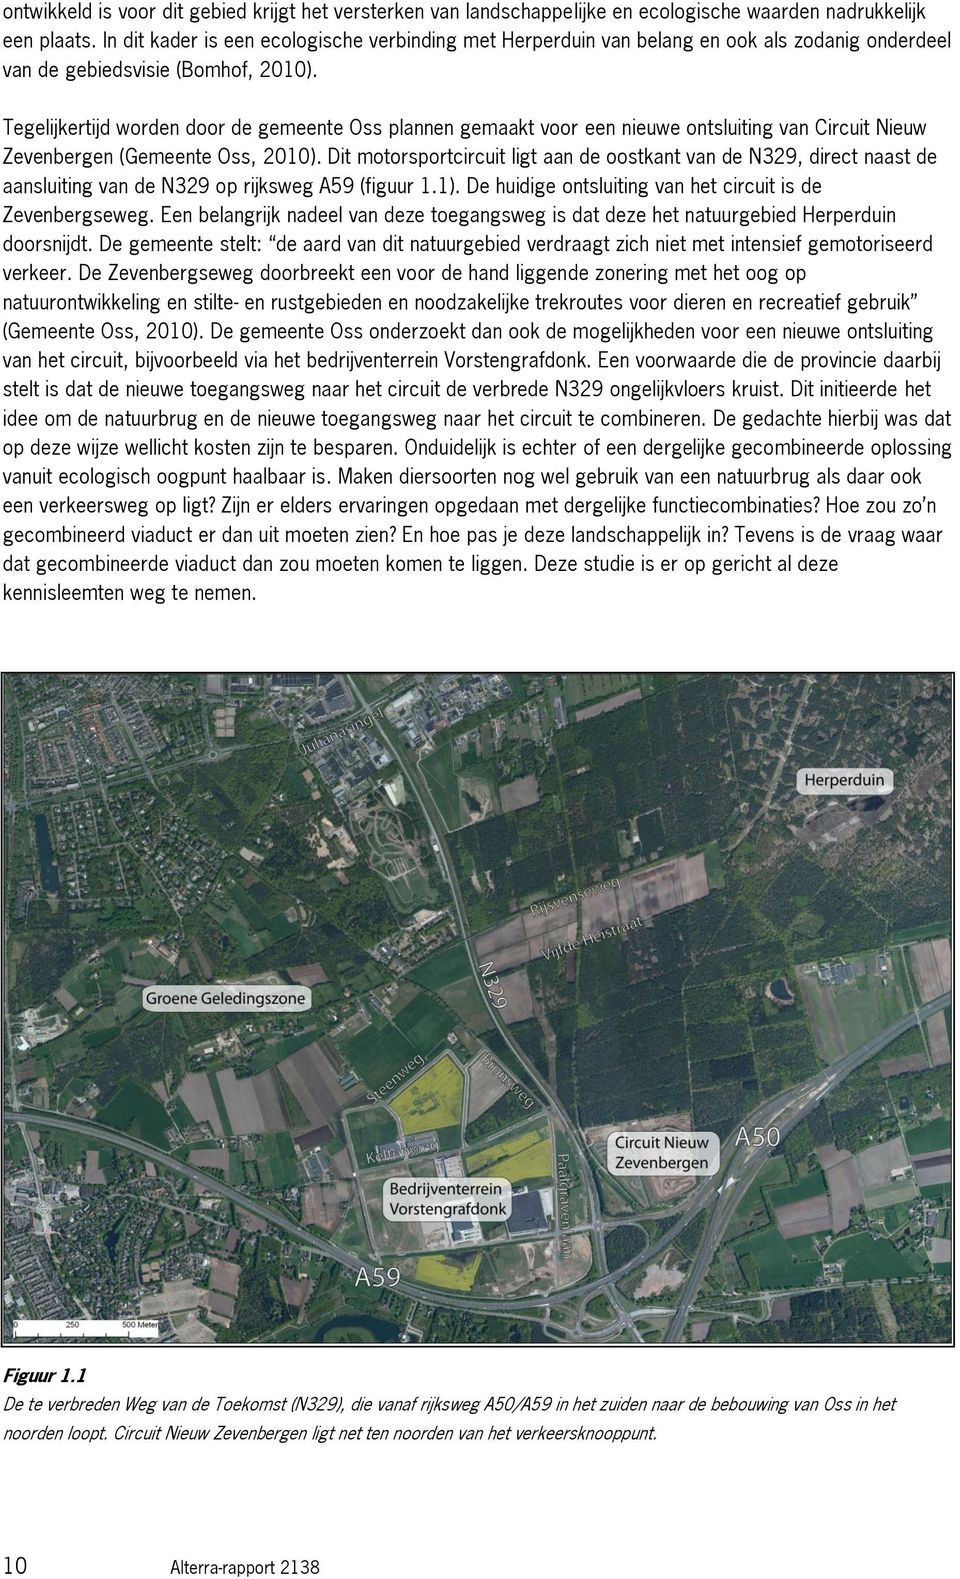 Tegelijkertijd worden door de gemeente Oss plannen gemaakt voor een nieuwe ontsluiting van Circuit Nieuw Zevenbergen (Gemeente Oss, 2010).